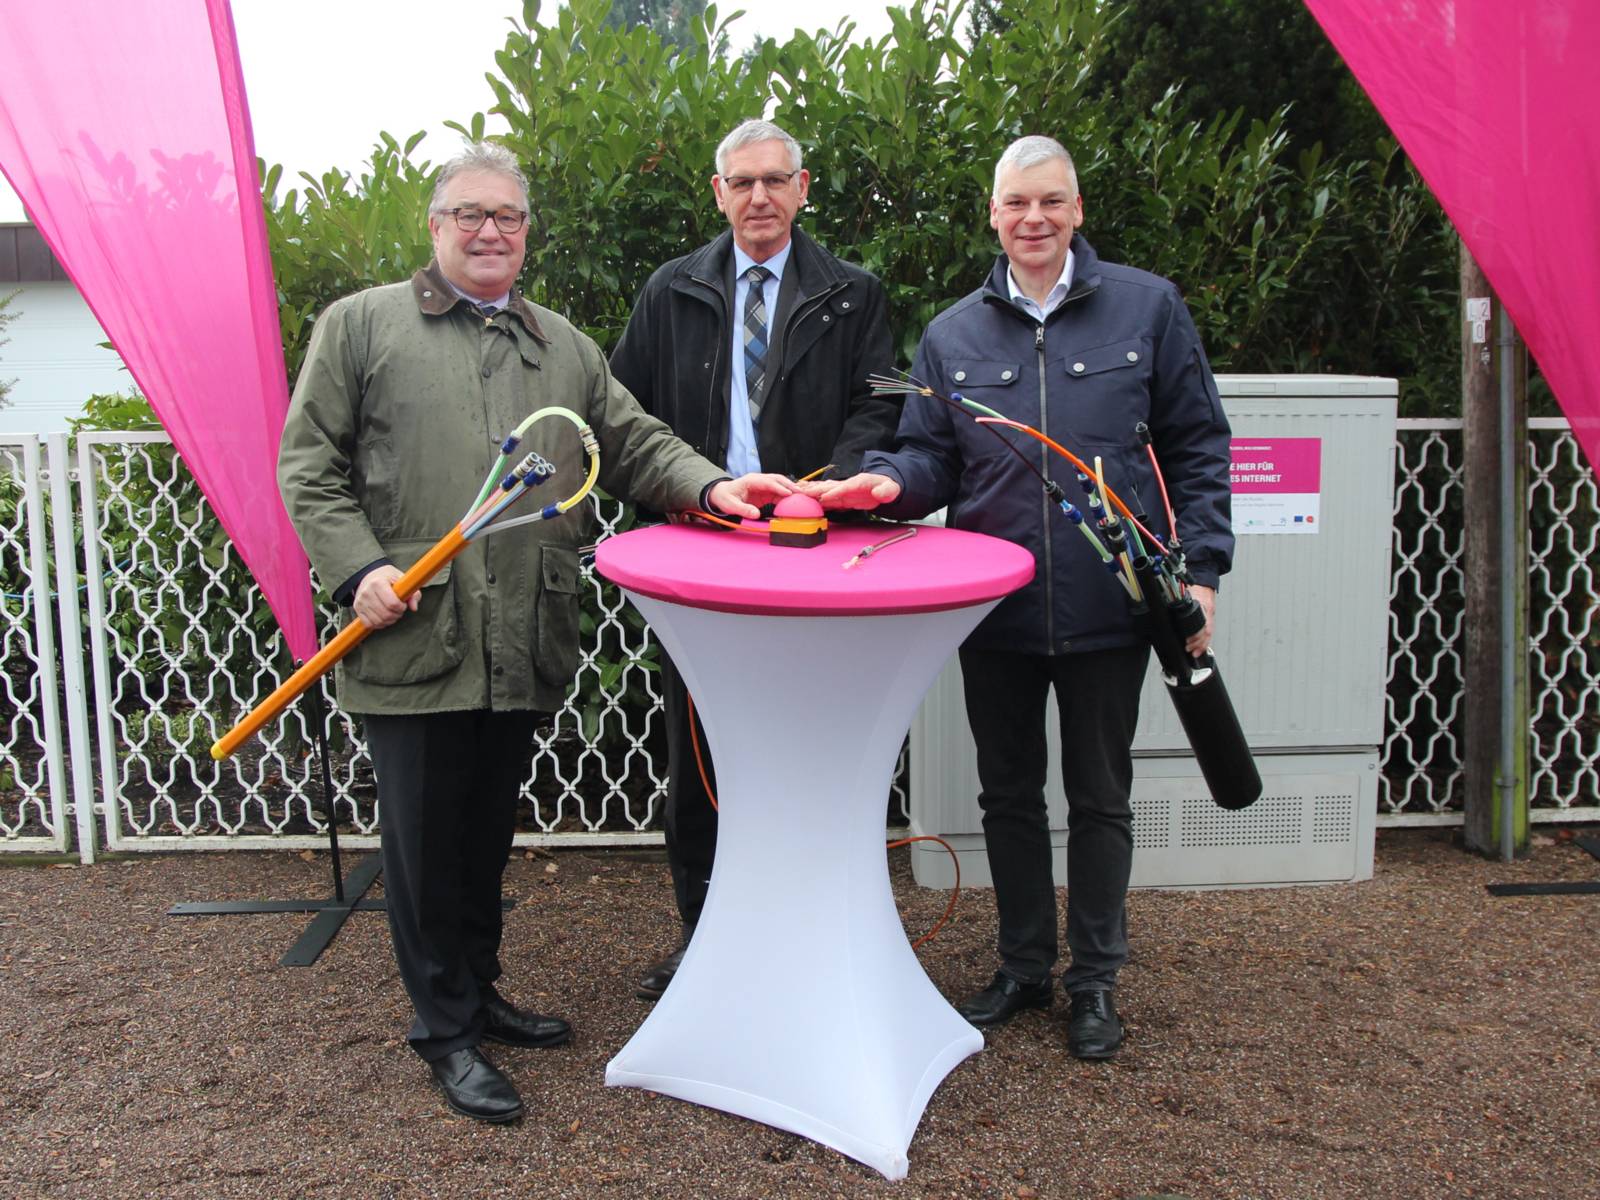 Drei Herren stehen draußen um einen Stehtisch mit pinkfarbener Tischplatte und drücken gemeinsam auf einen Buzzer.